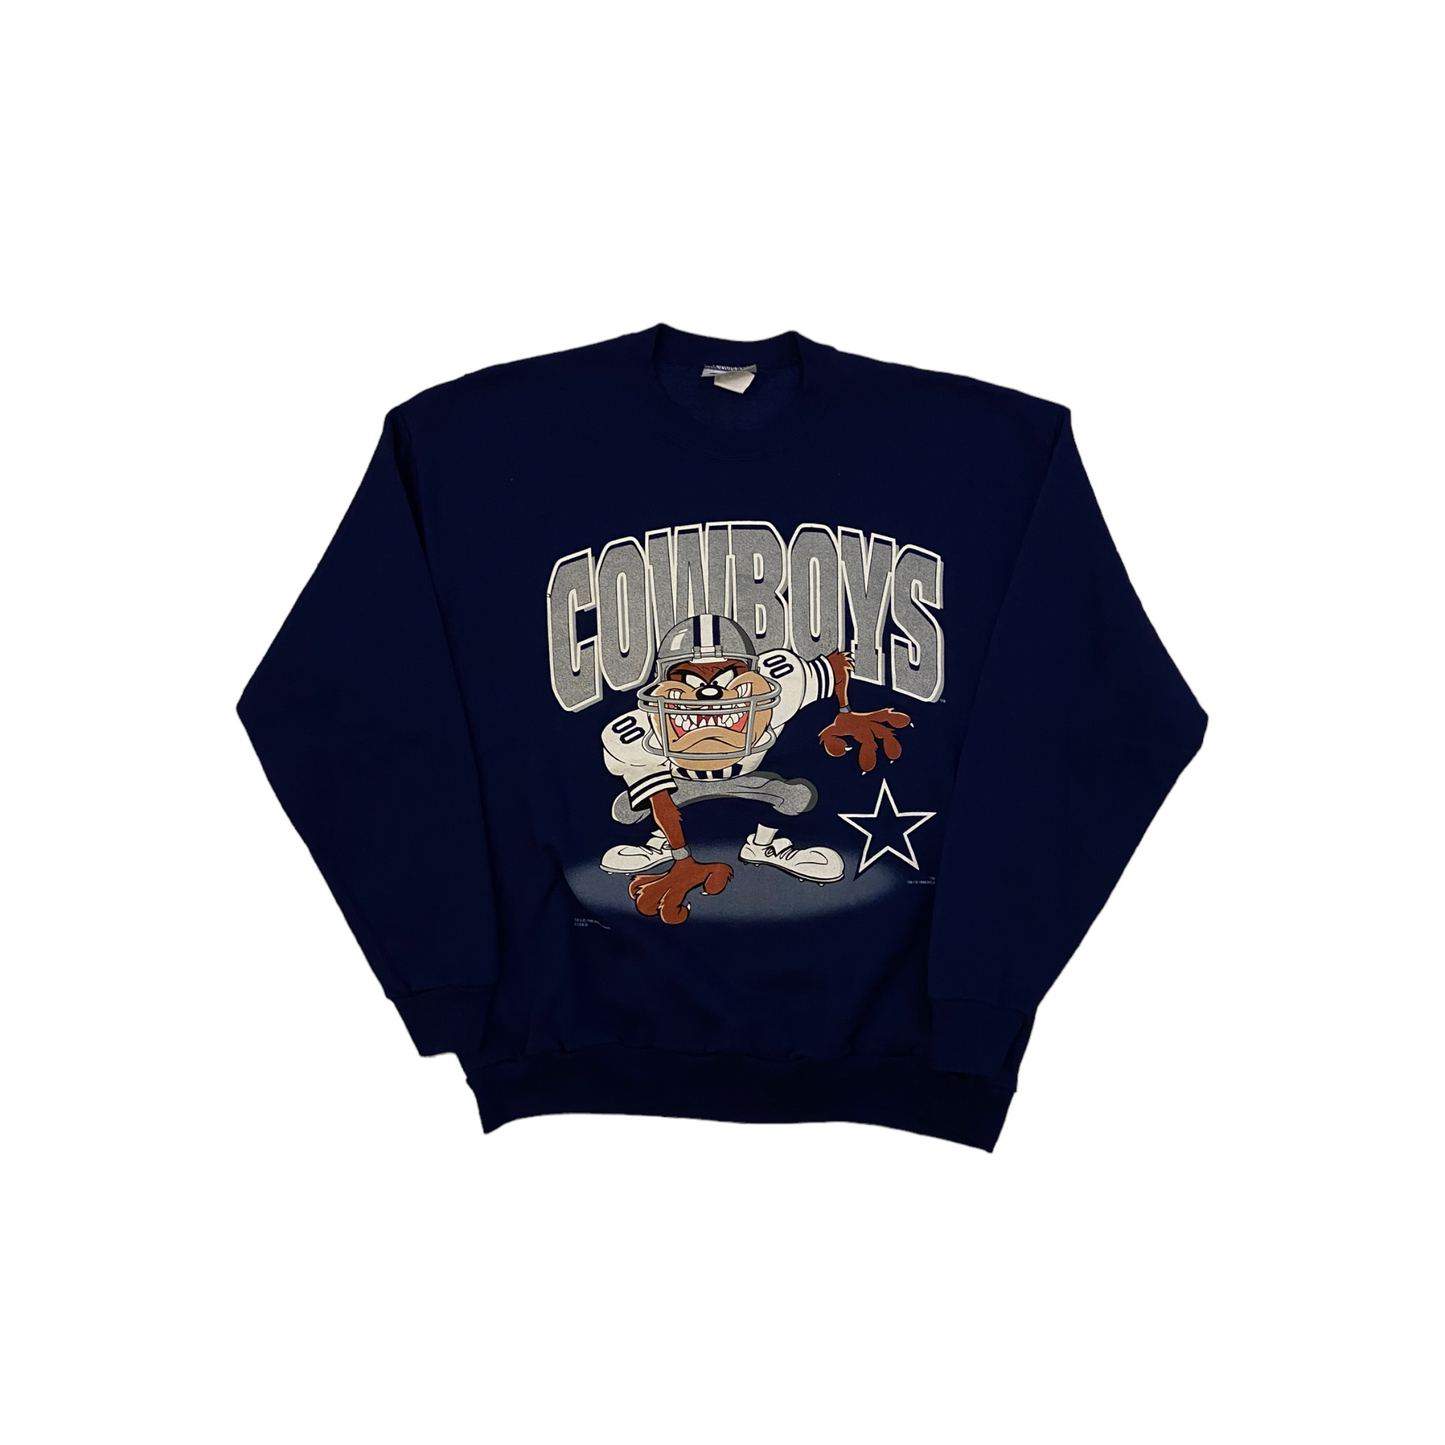 Cowboys 1996 Sweatshirt XL